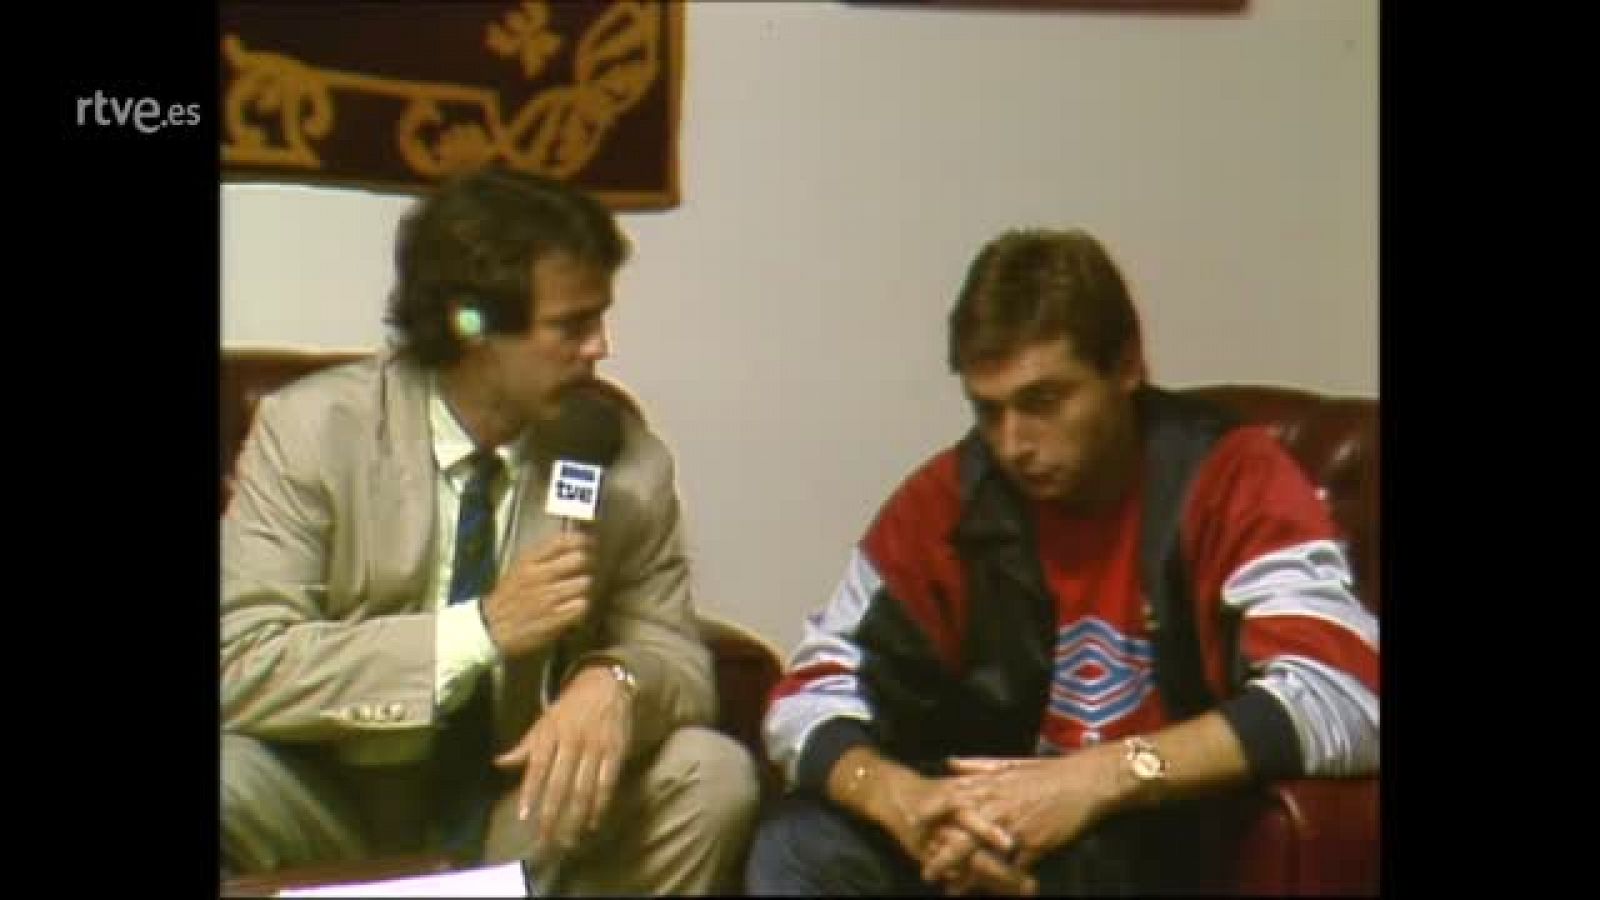 Entrevista a Robinson tras un Real Madid-Osasuna de 1988